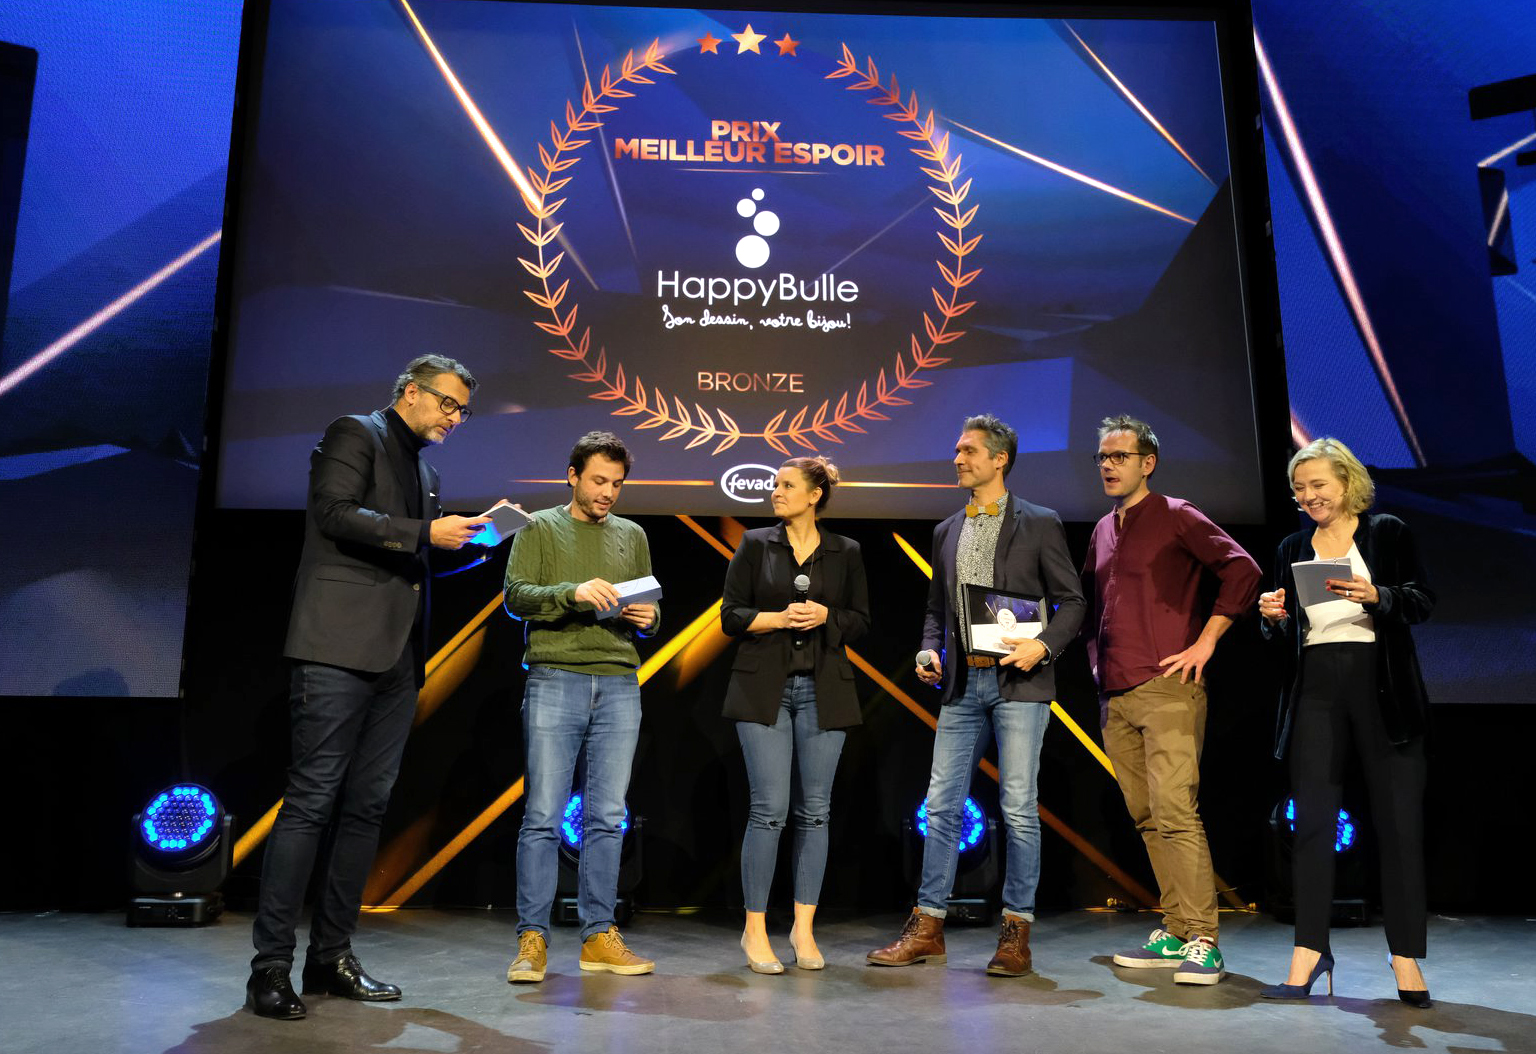 HappyBulle élu "Meilleur espoir e-commerce" Bronze 2020 !